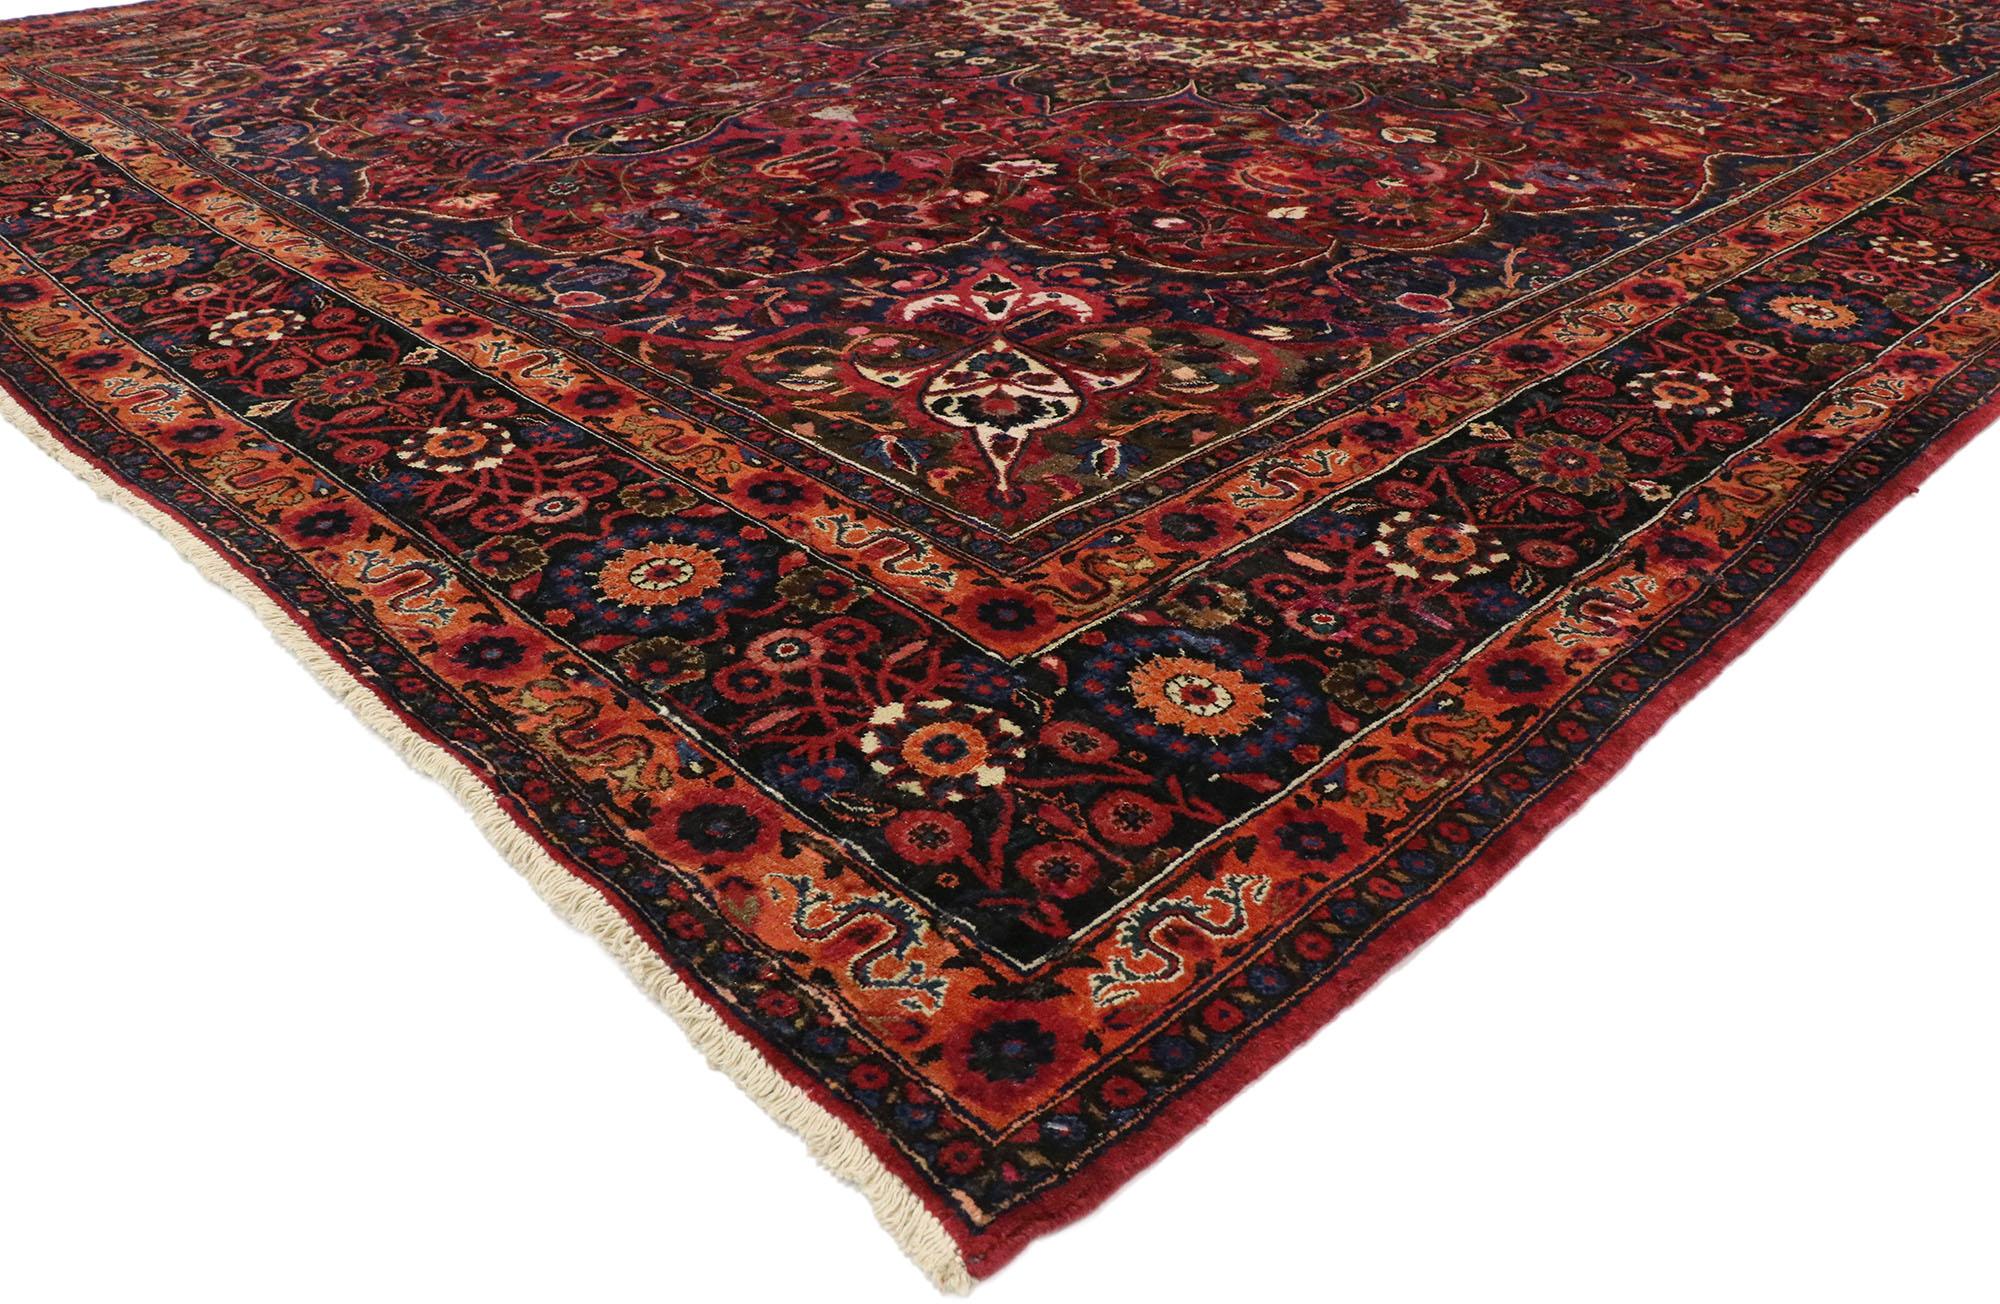 75668, persischer Mashhad Teppich im viktorianischen Luxe-Stil. Dieser handgeknüpfte persische Mashhad-Teppich aus Wolle zeigt ein rundes Mashhad-Medaillon mit 16 Punkten, das an beiden Enden von Palmetten flankiert wird und inmitten von